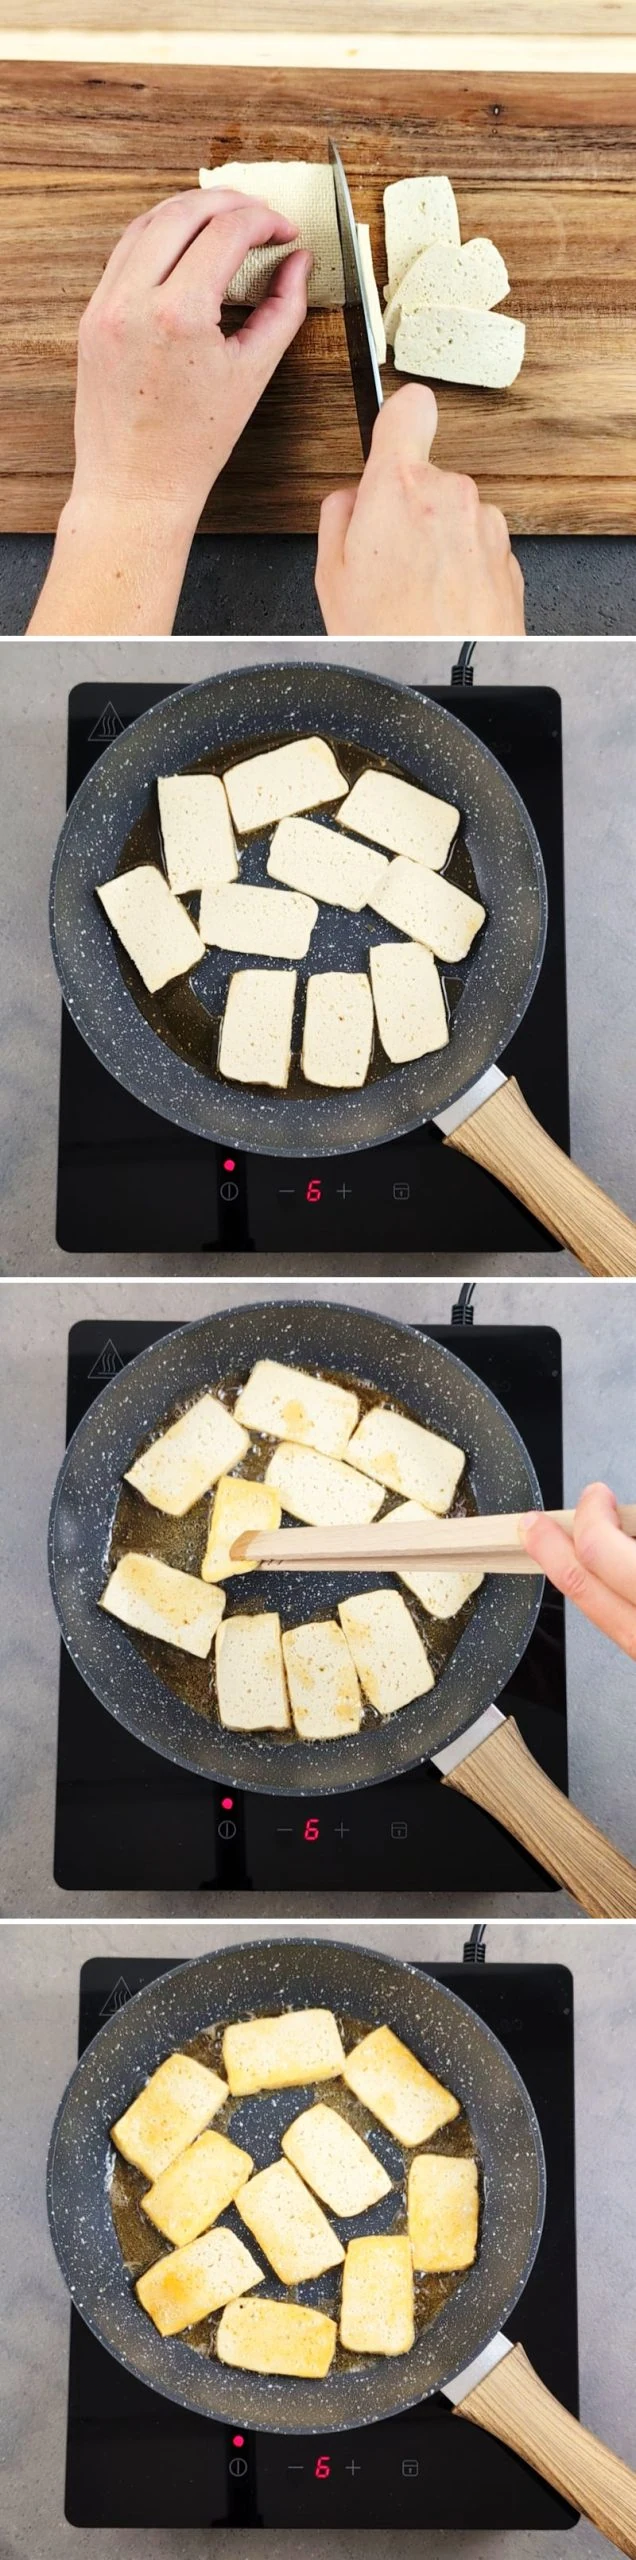 Udon Nudelsuppe Schritt 3 Tofu braten